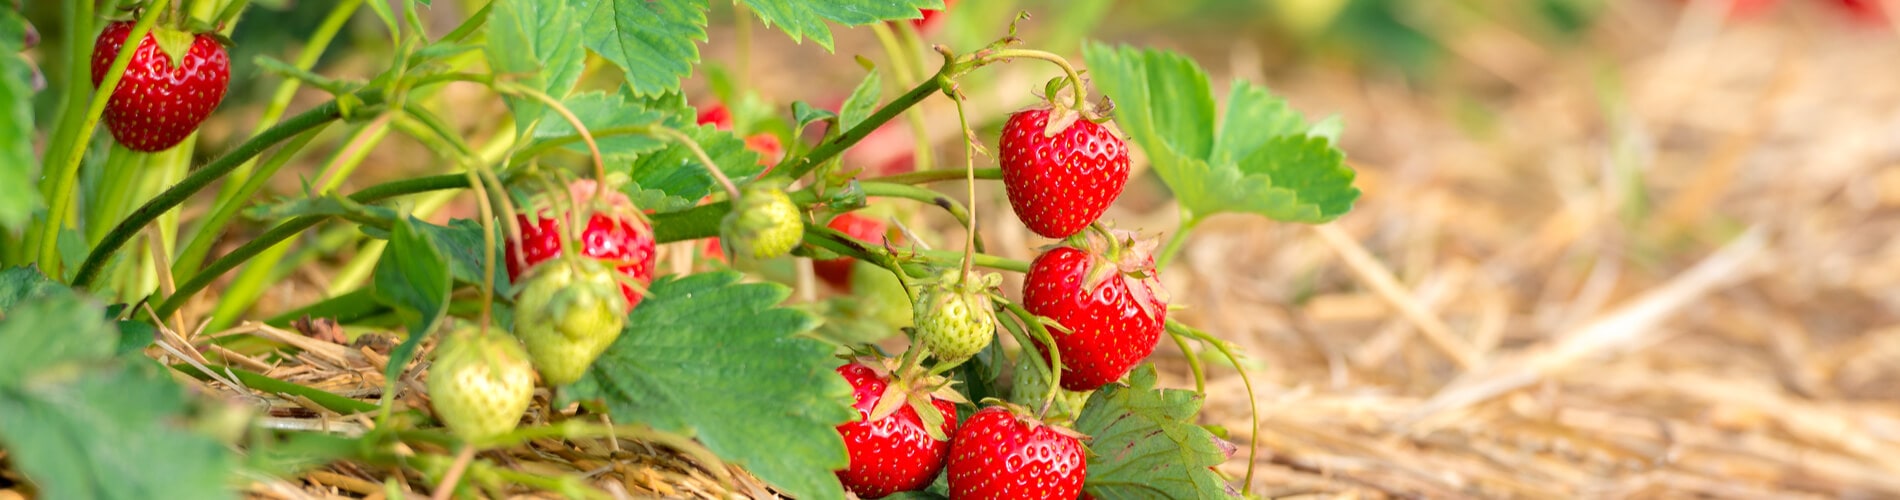 Erdbeeren kultivieren, lagern und zubereiten | Blog | Saemereien.ch |  Saemereien.ch